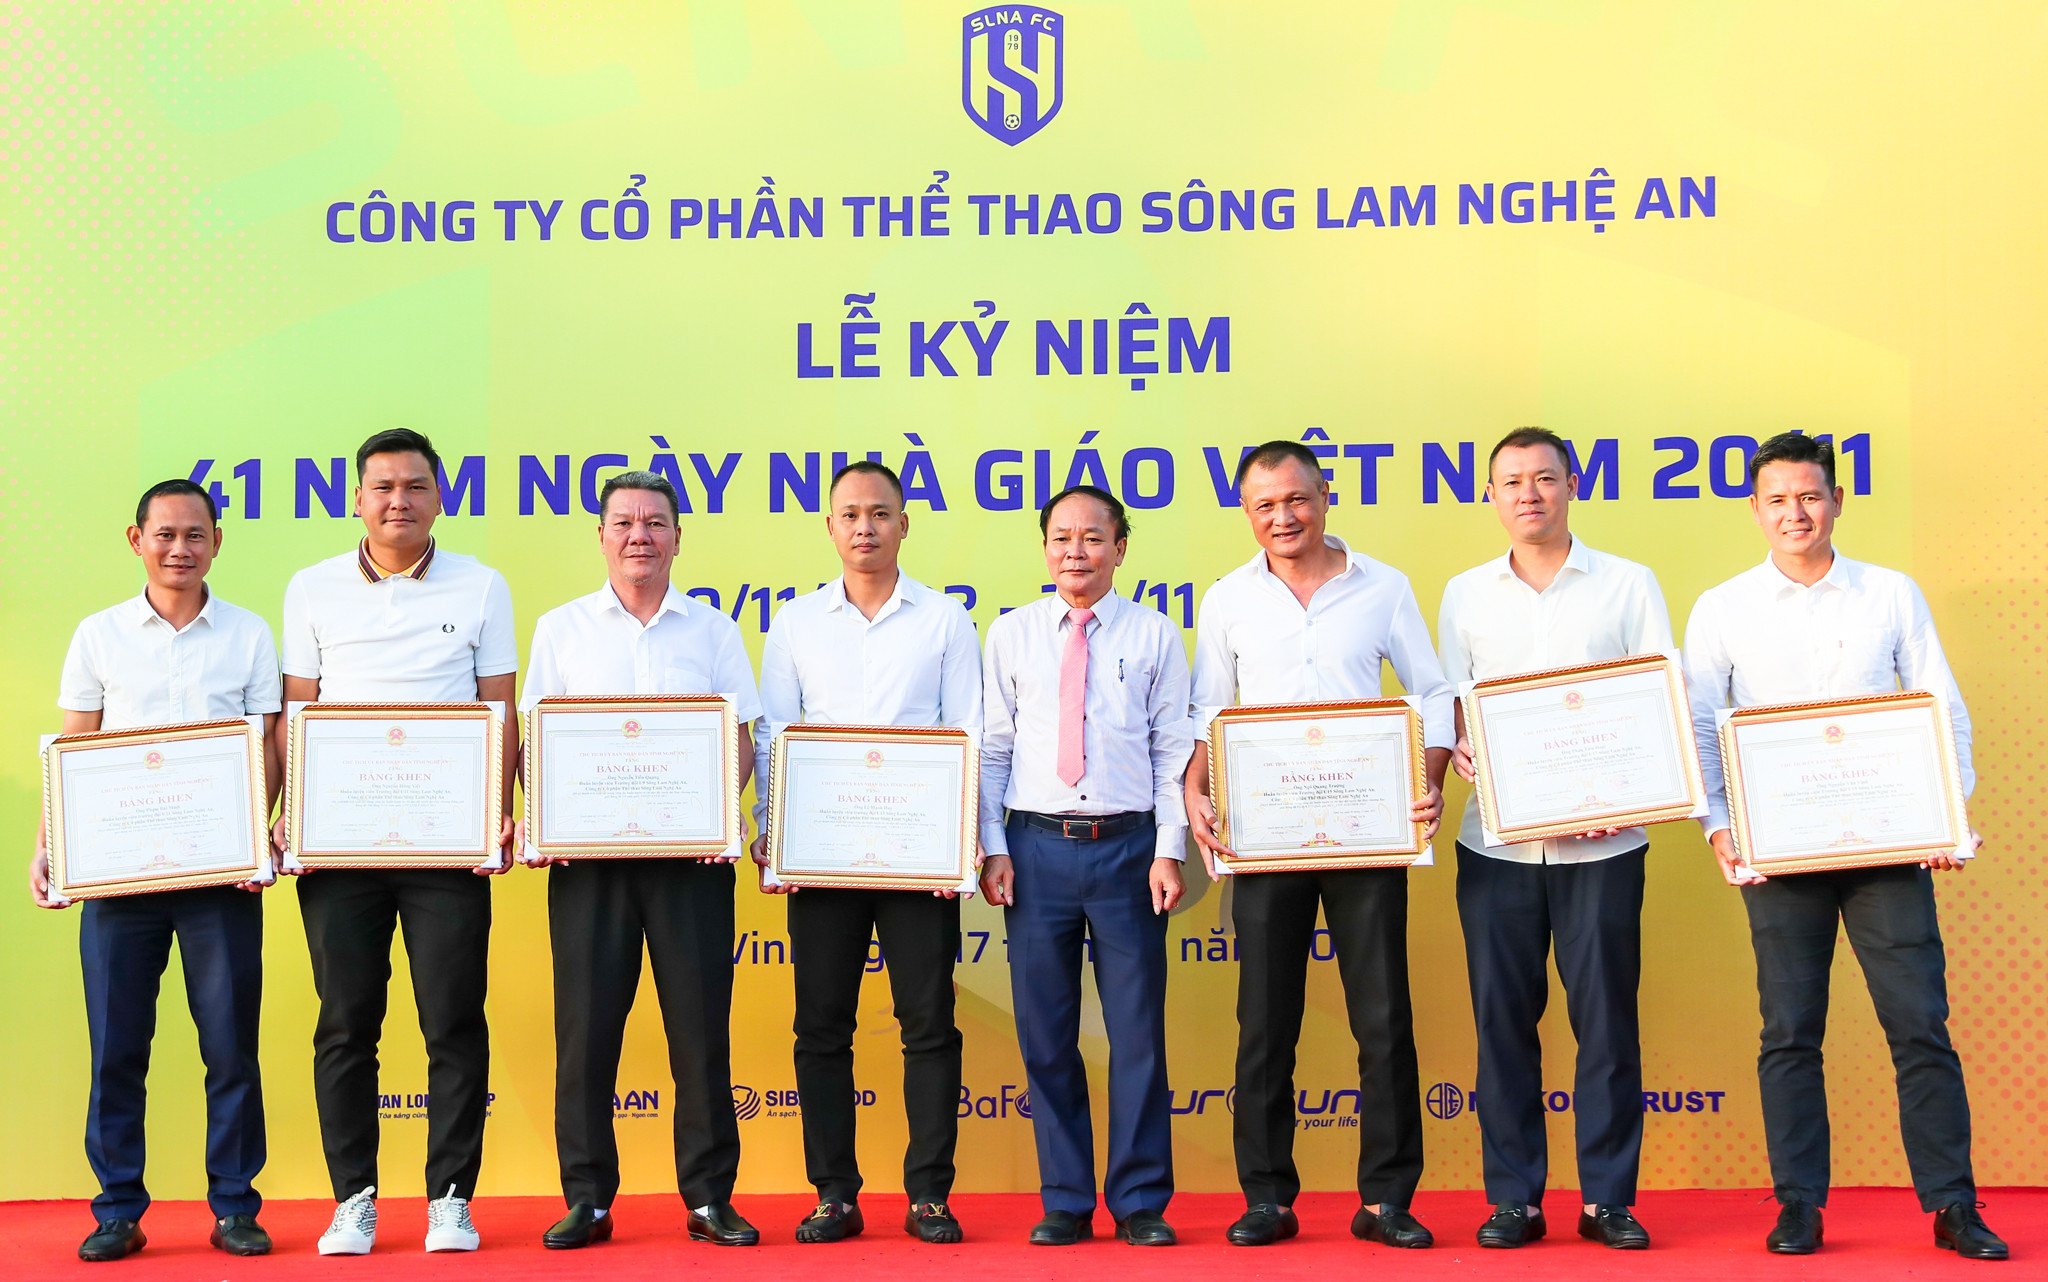 HLV Lê Mạnh Huy được nhận bằng khen của tỉnh Nghệ An, vì đã có nhiều đóng góp cho bóng đá tỉnh nhà. Ảnh Đức Anh.jpg